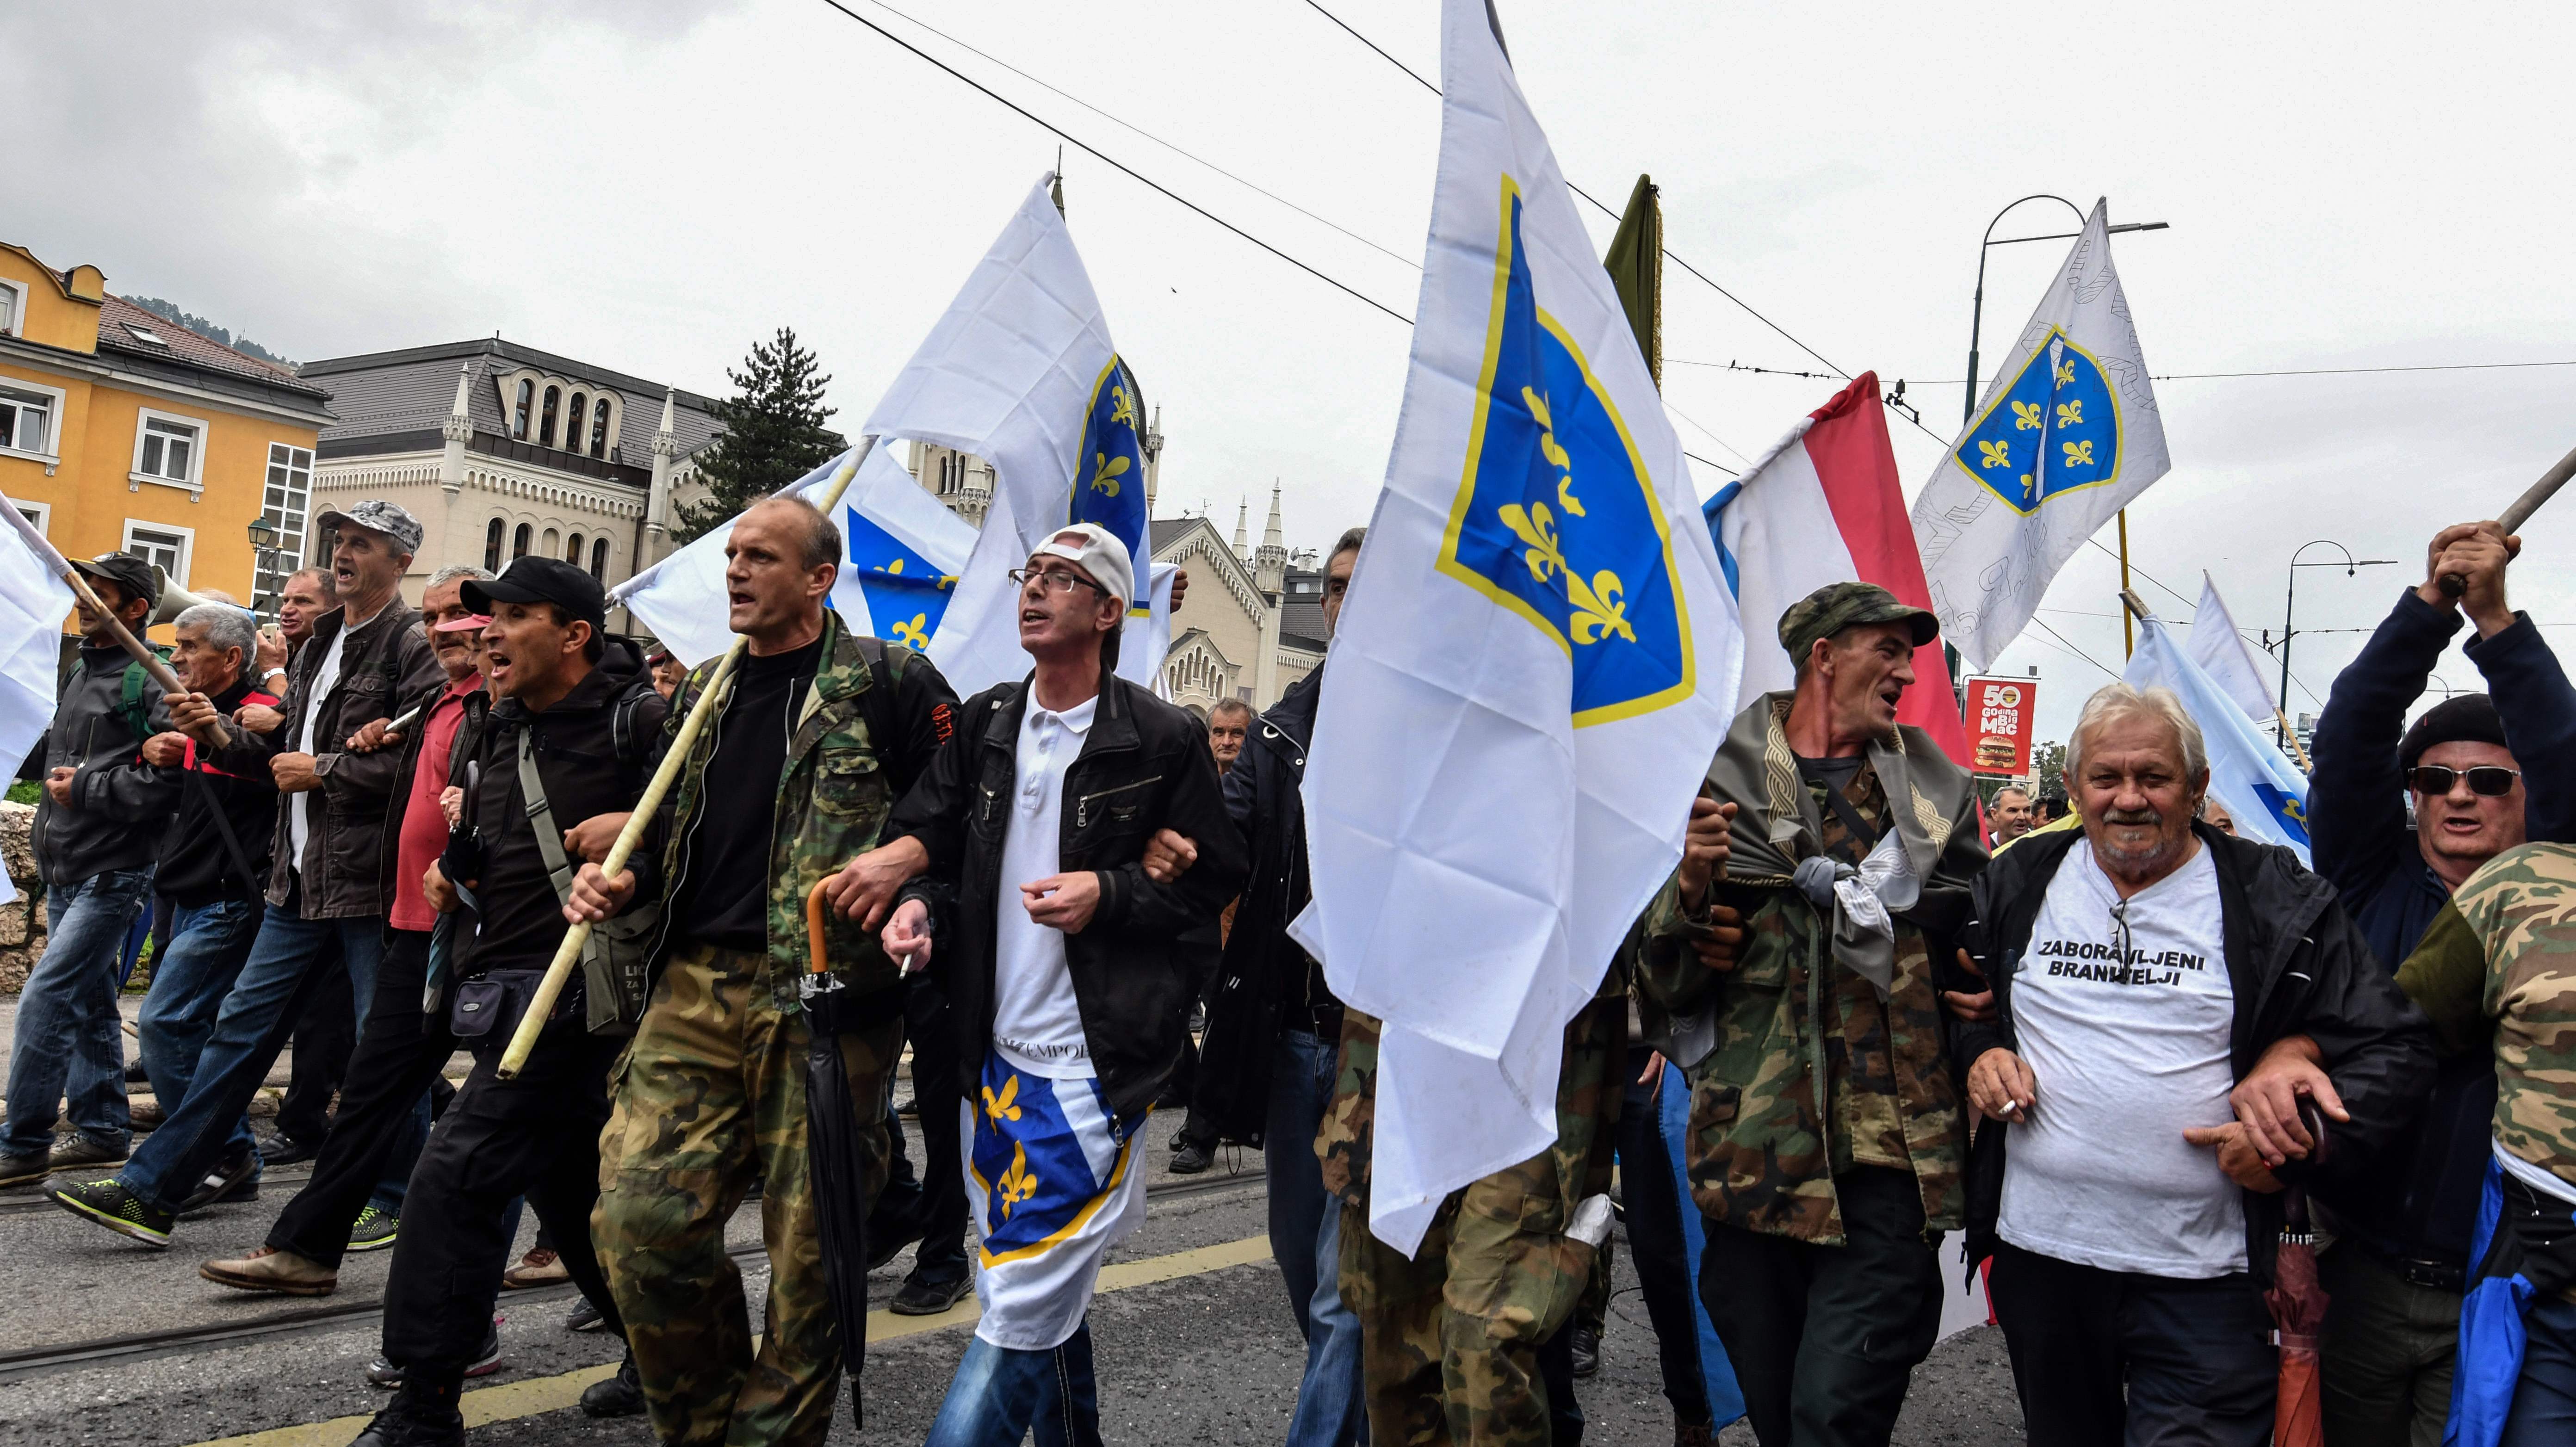 صور.. شرطة البوسنة تشتبك مع مئات من المحاربين القدماء بالعاصمة سراييفو  1260529-البوسنة-(5)